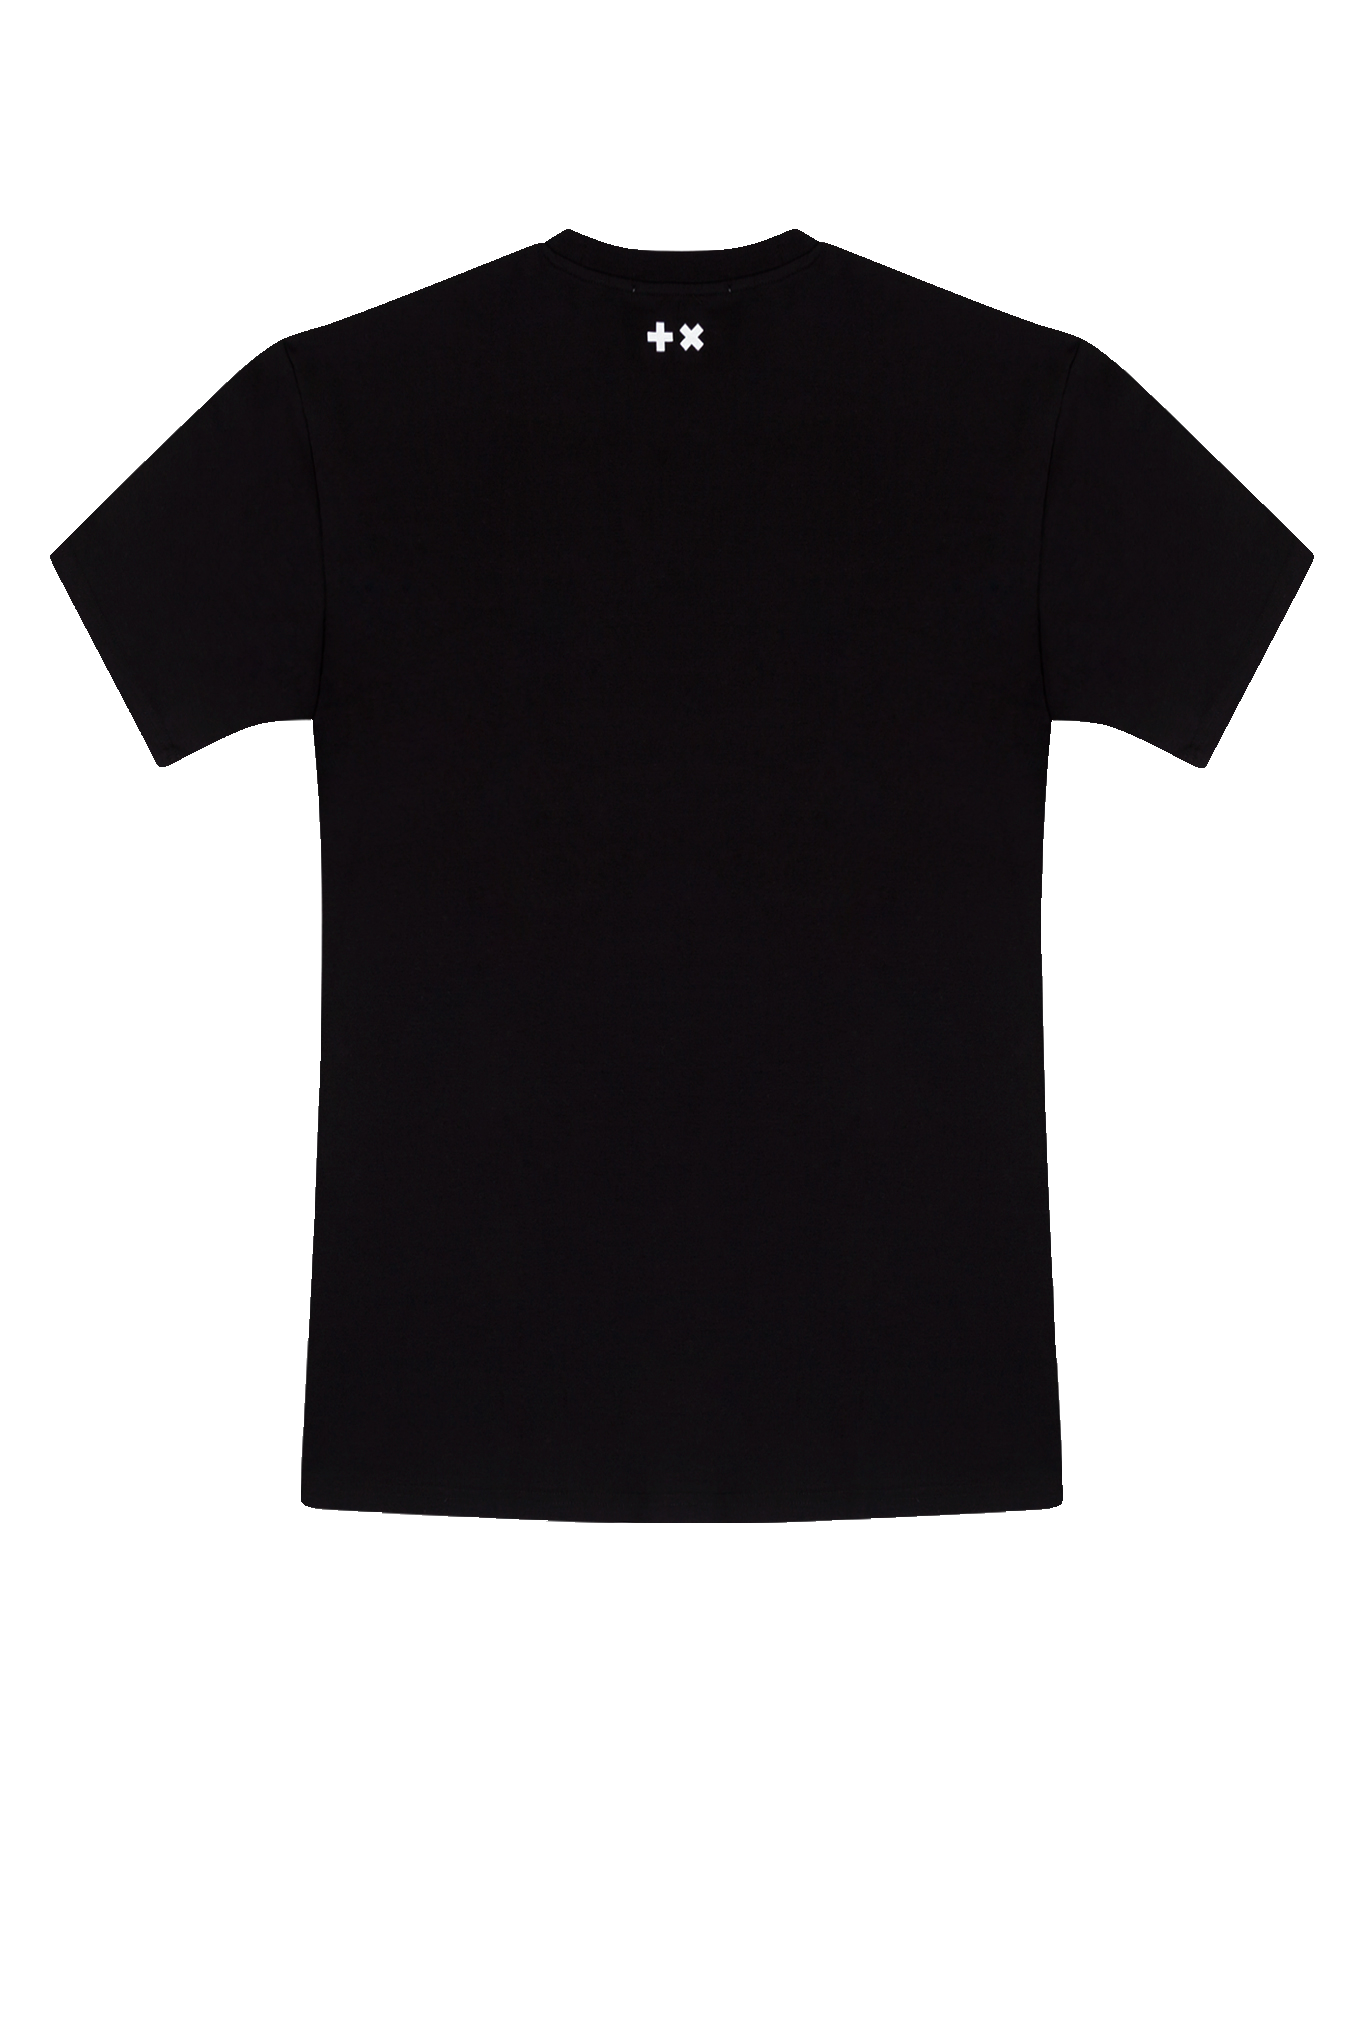 Black T Shirt PNG Images, Transparent Black T Shirt Image Download - PNGitem